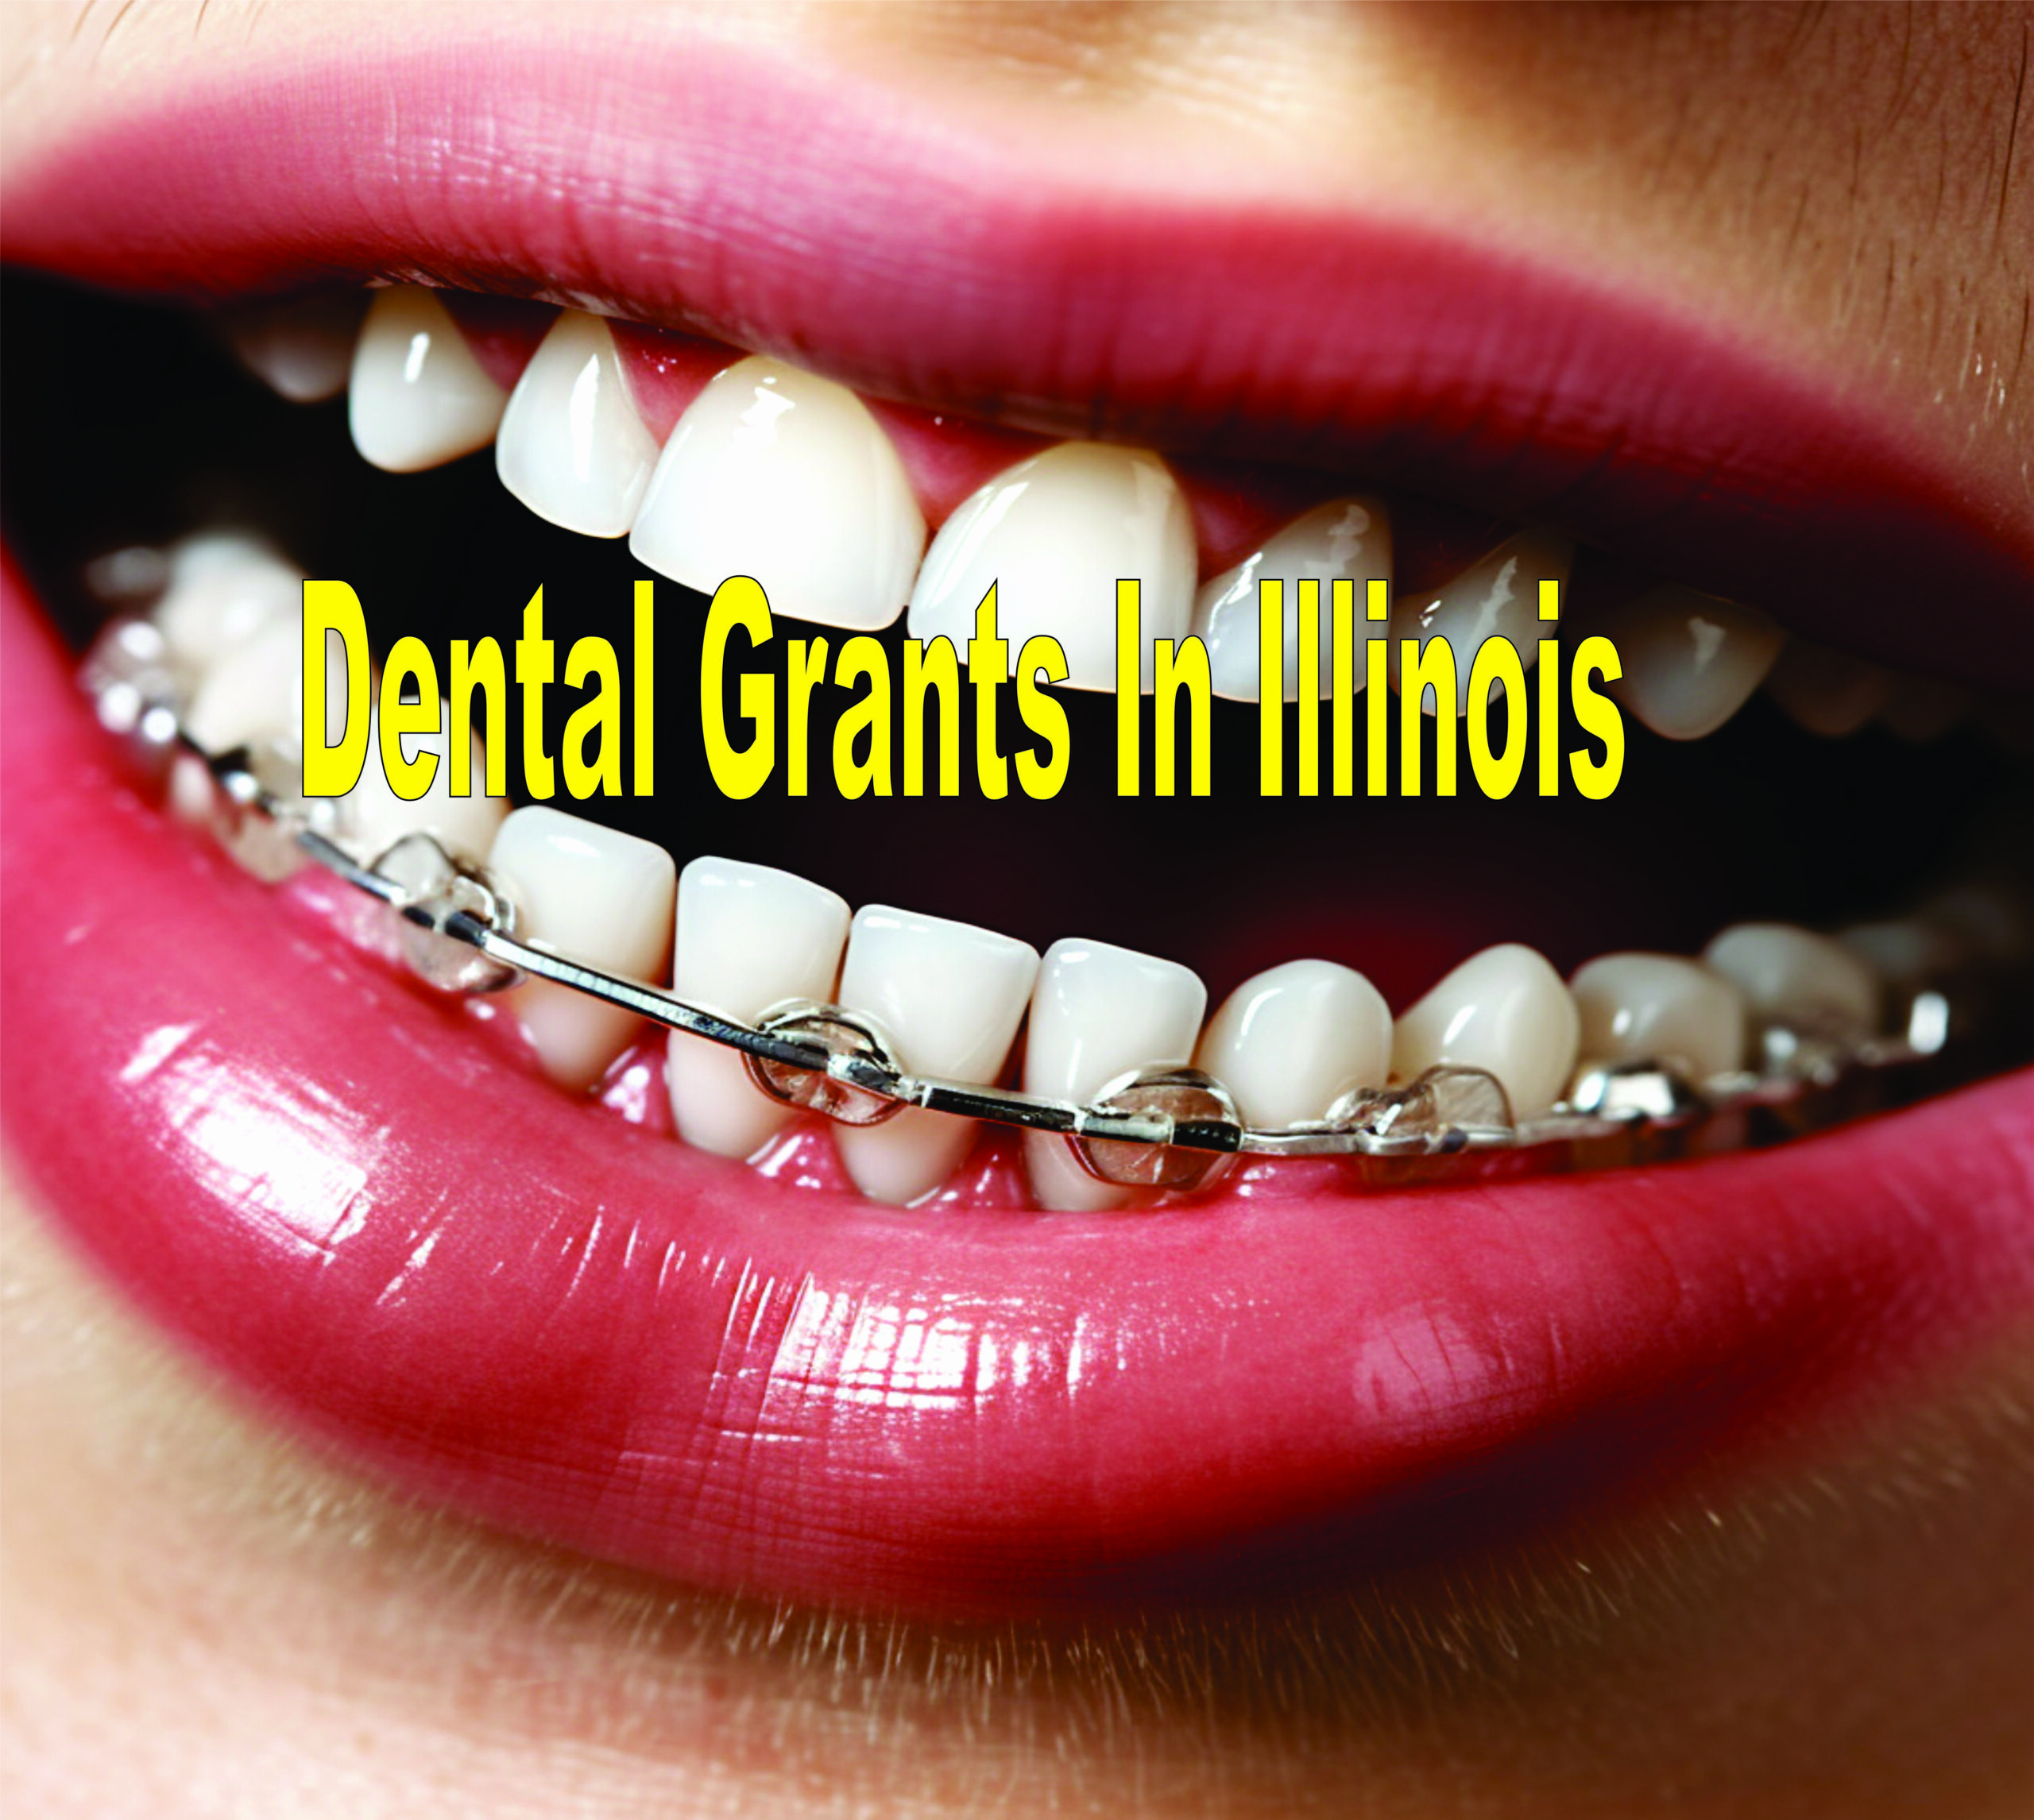 Dental Grants In Illinois